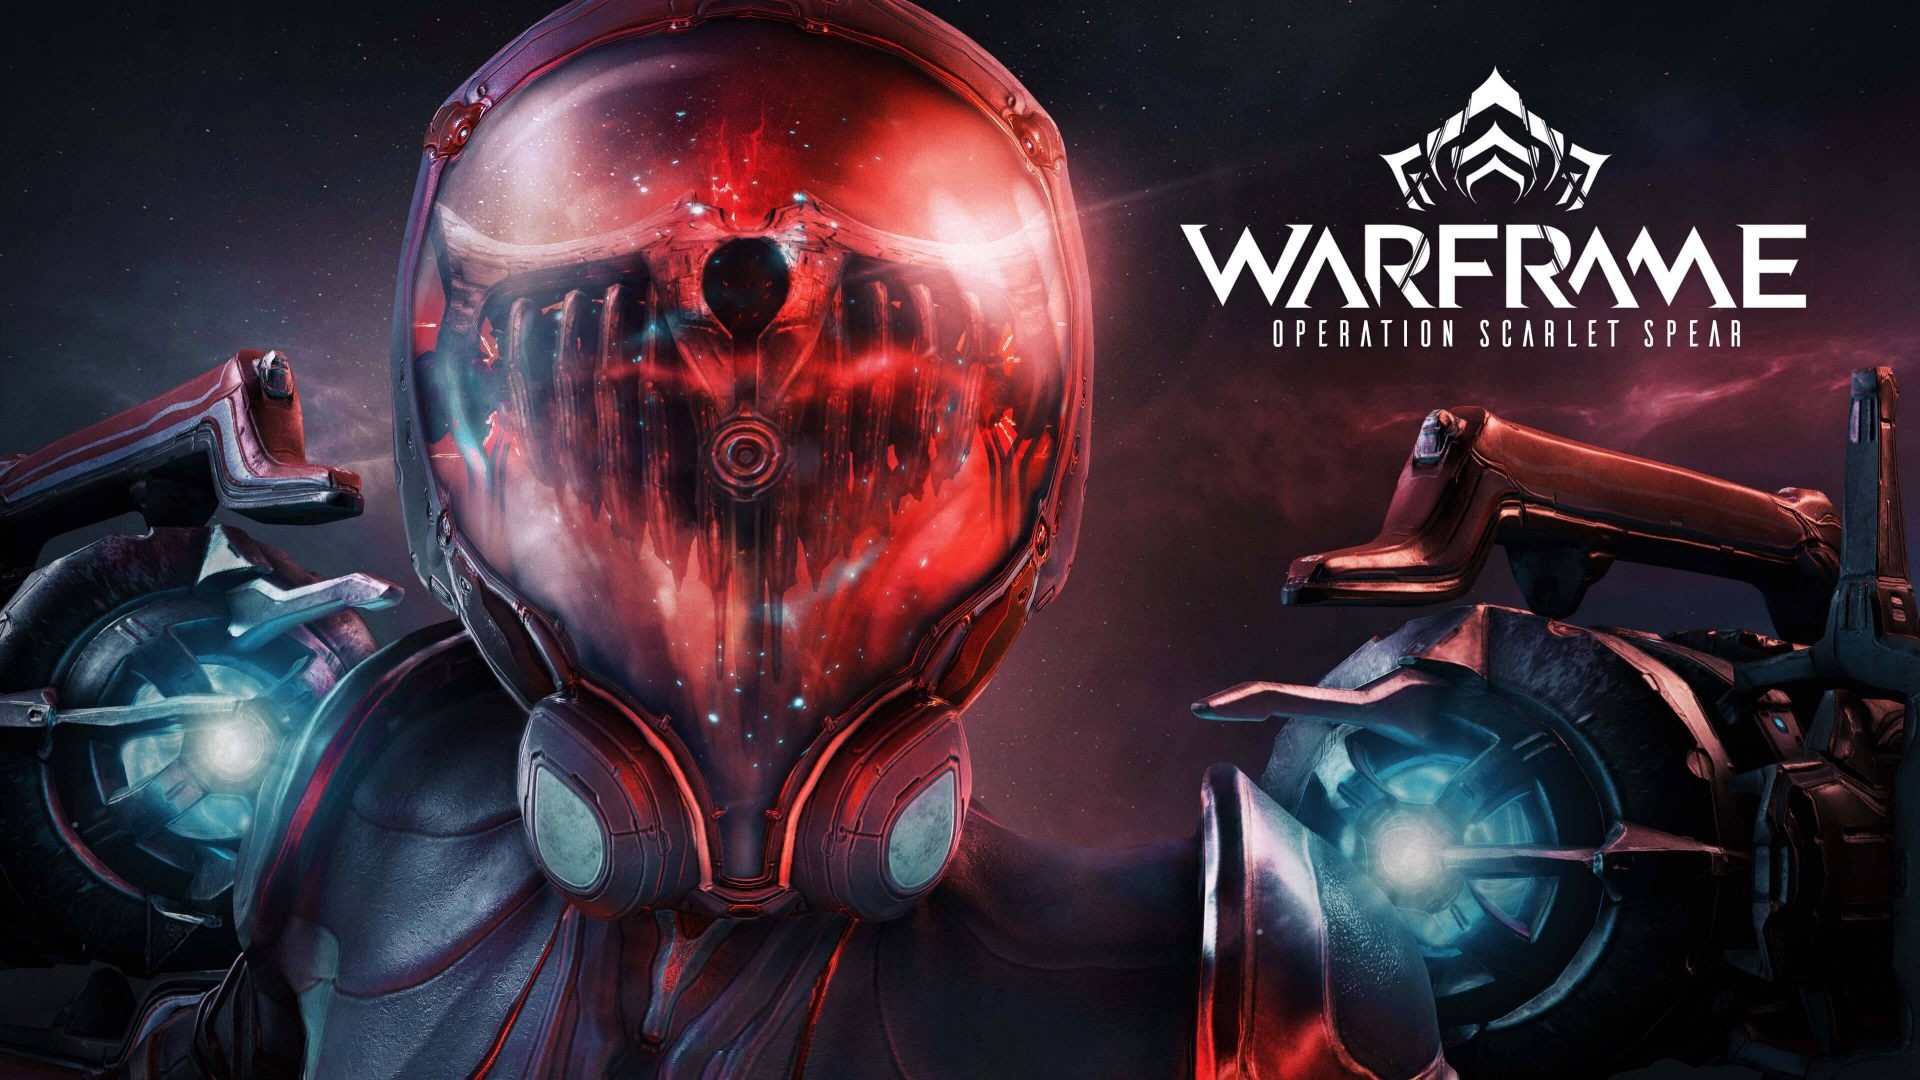 宇宙忍者act Warframe 新イベント 深紅の槍 がpc向けに開催 イベント期間は4月22日まで Game Spark 国内 海外ゲーム情報サイト